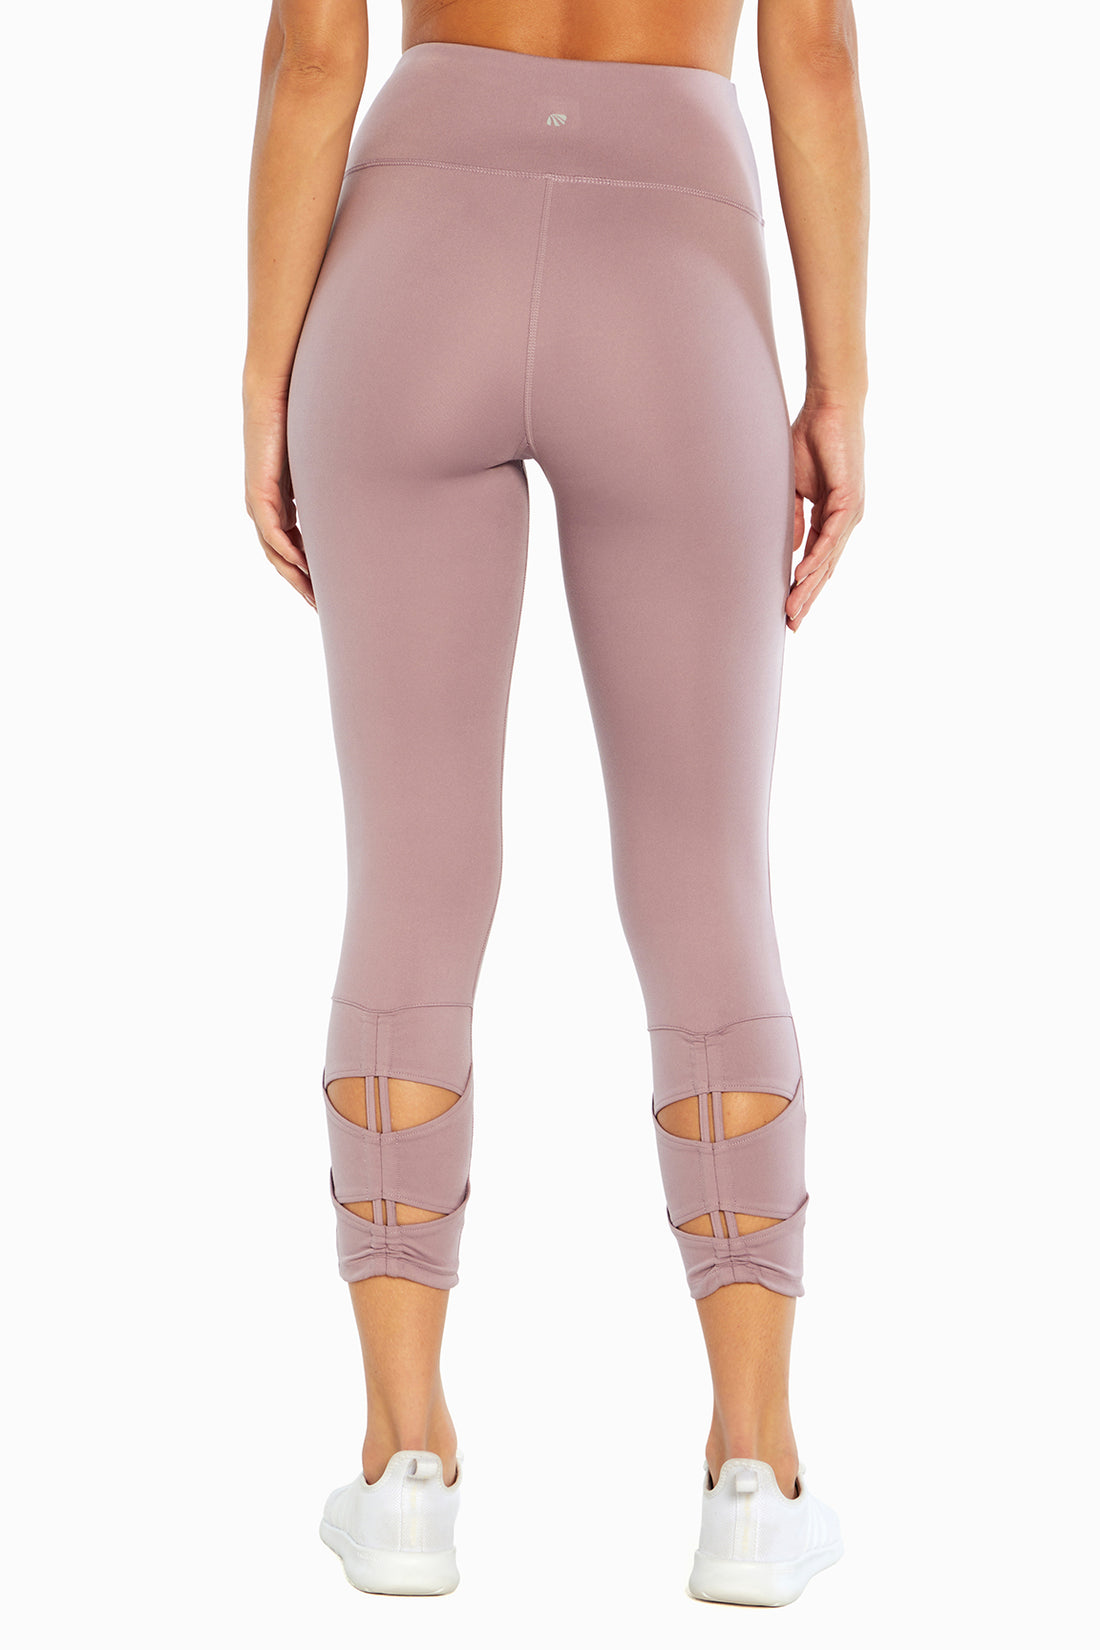 NEW] Constantly Varied Gear Tropiskull Capri Leggings  Chic boutique,  Capri leggings, Constantly varied gear